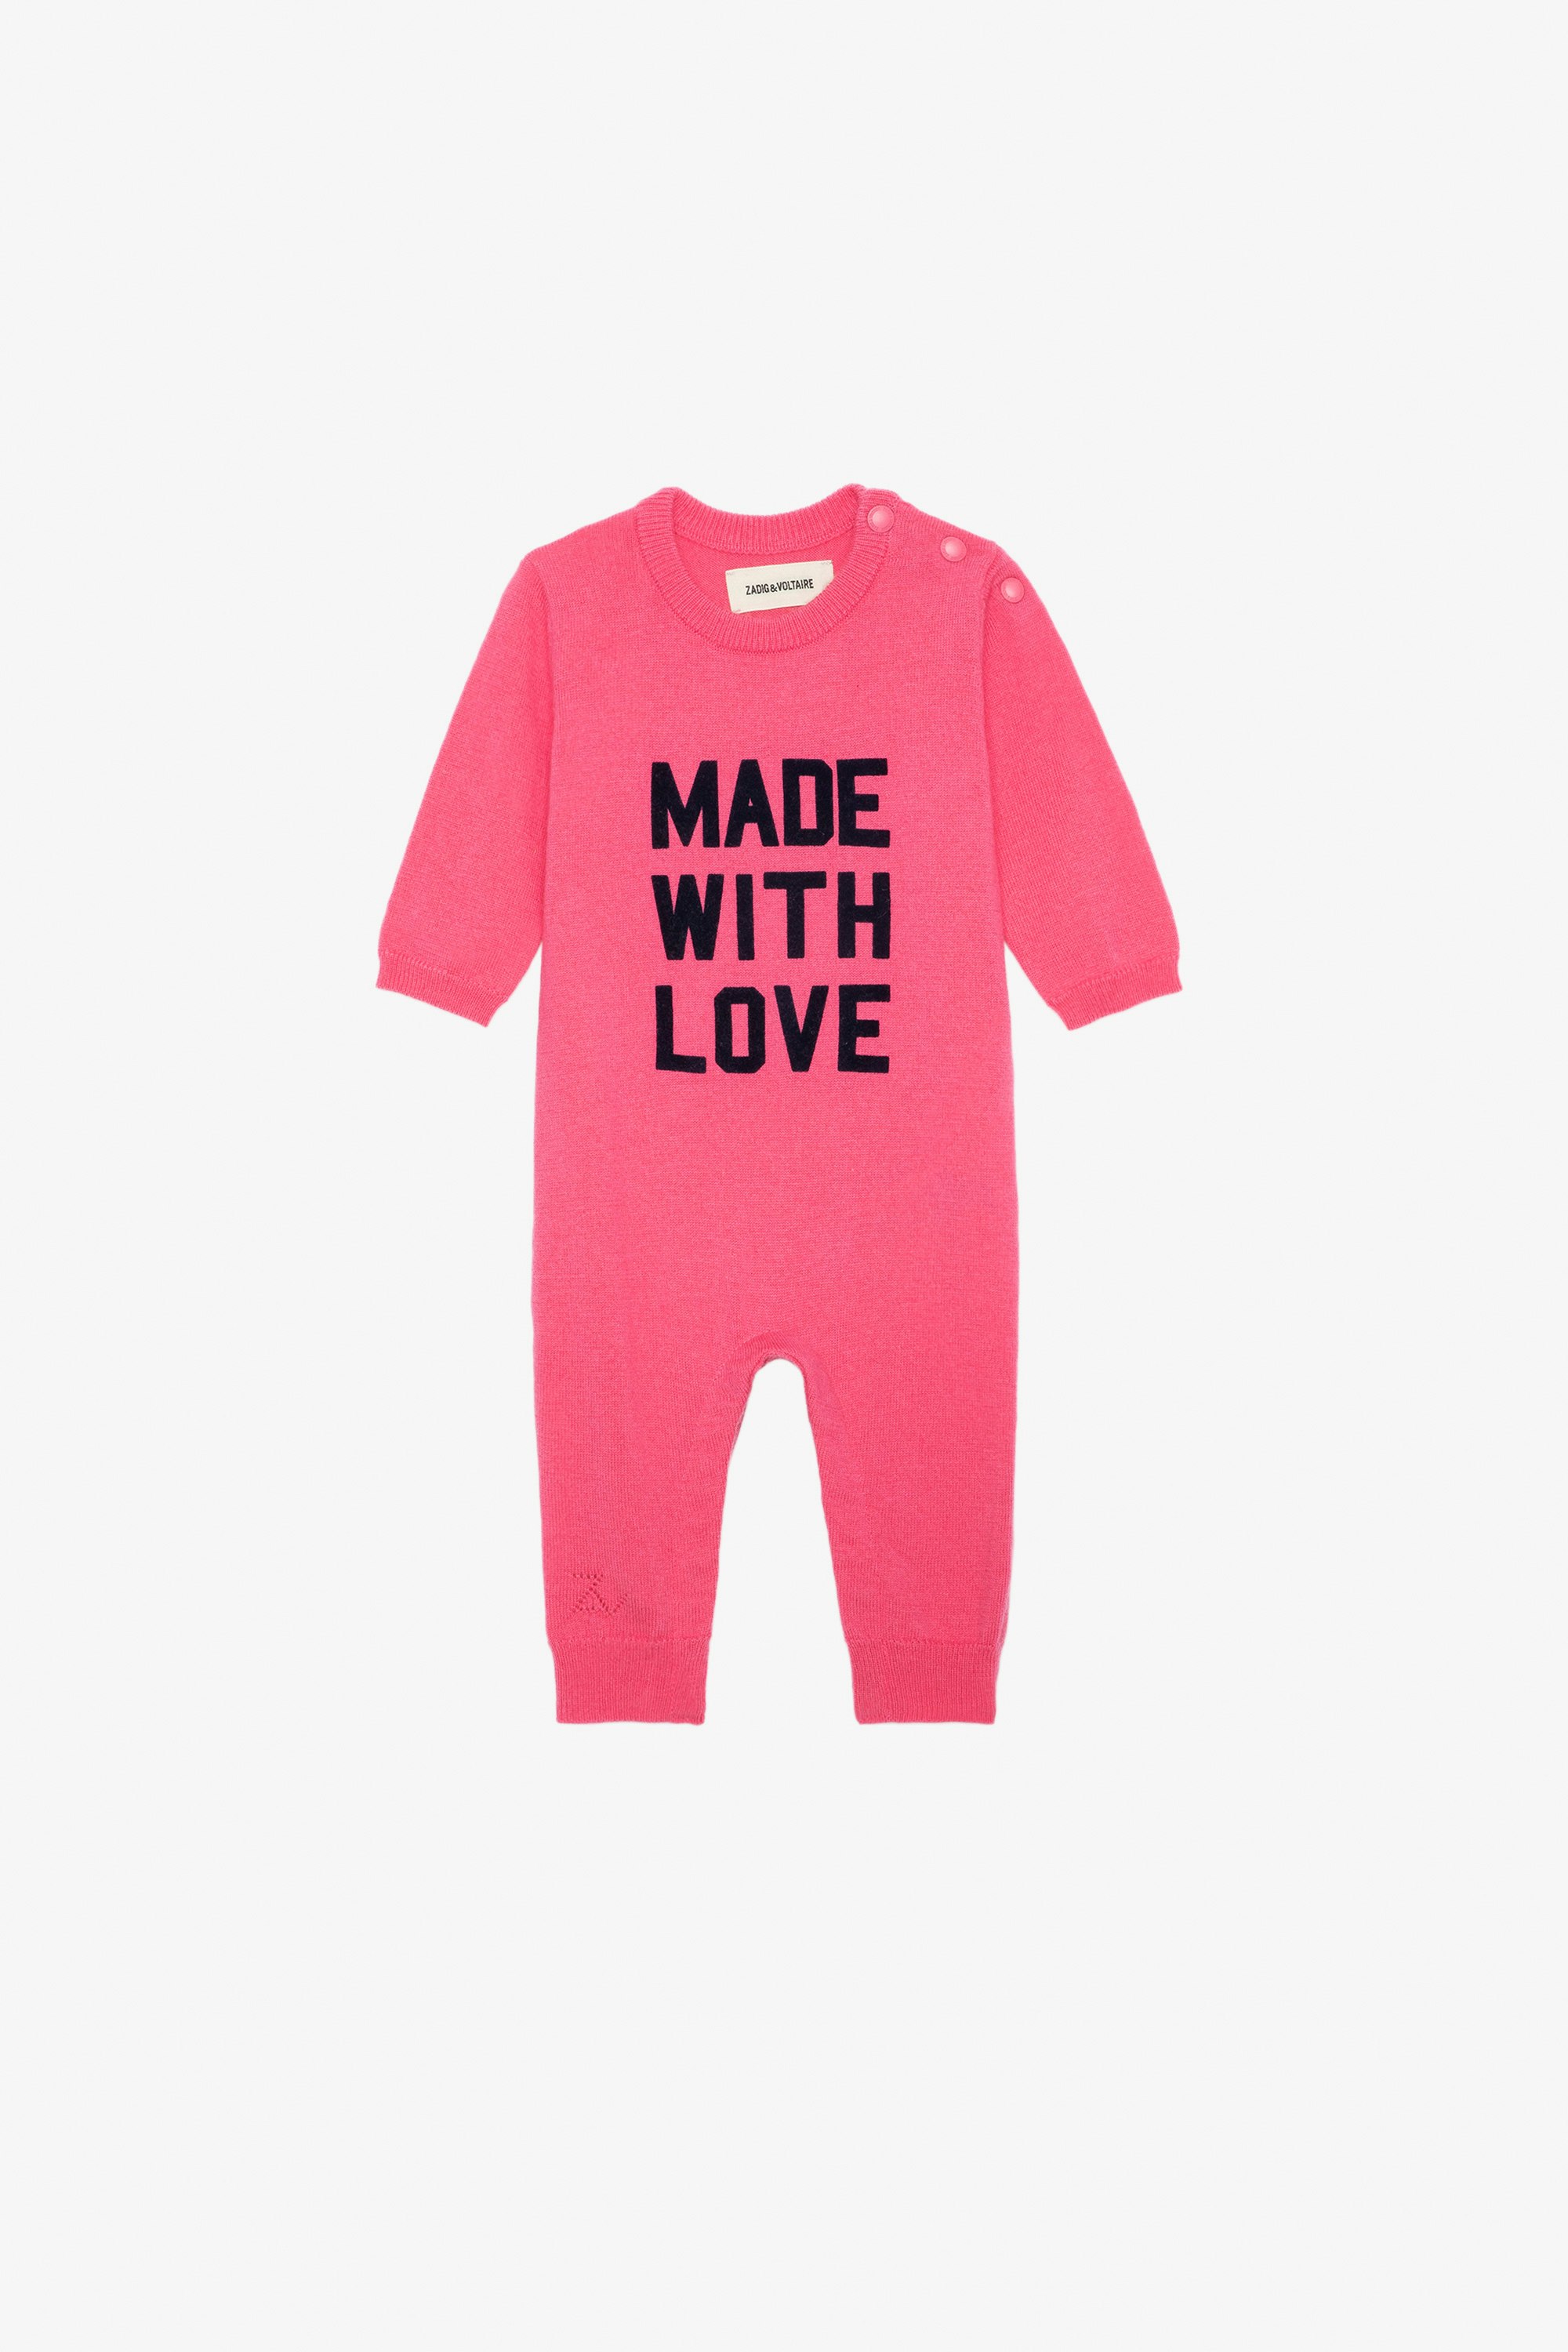 Tuta intera Didou Neonato - Tuta intera in maglia rosa con scritta "Made With Love" da neonato.